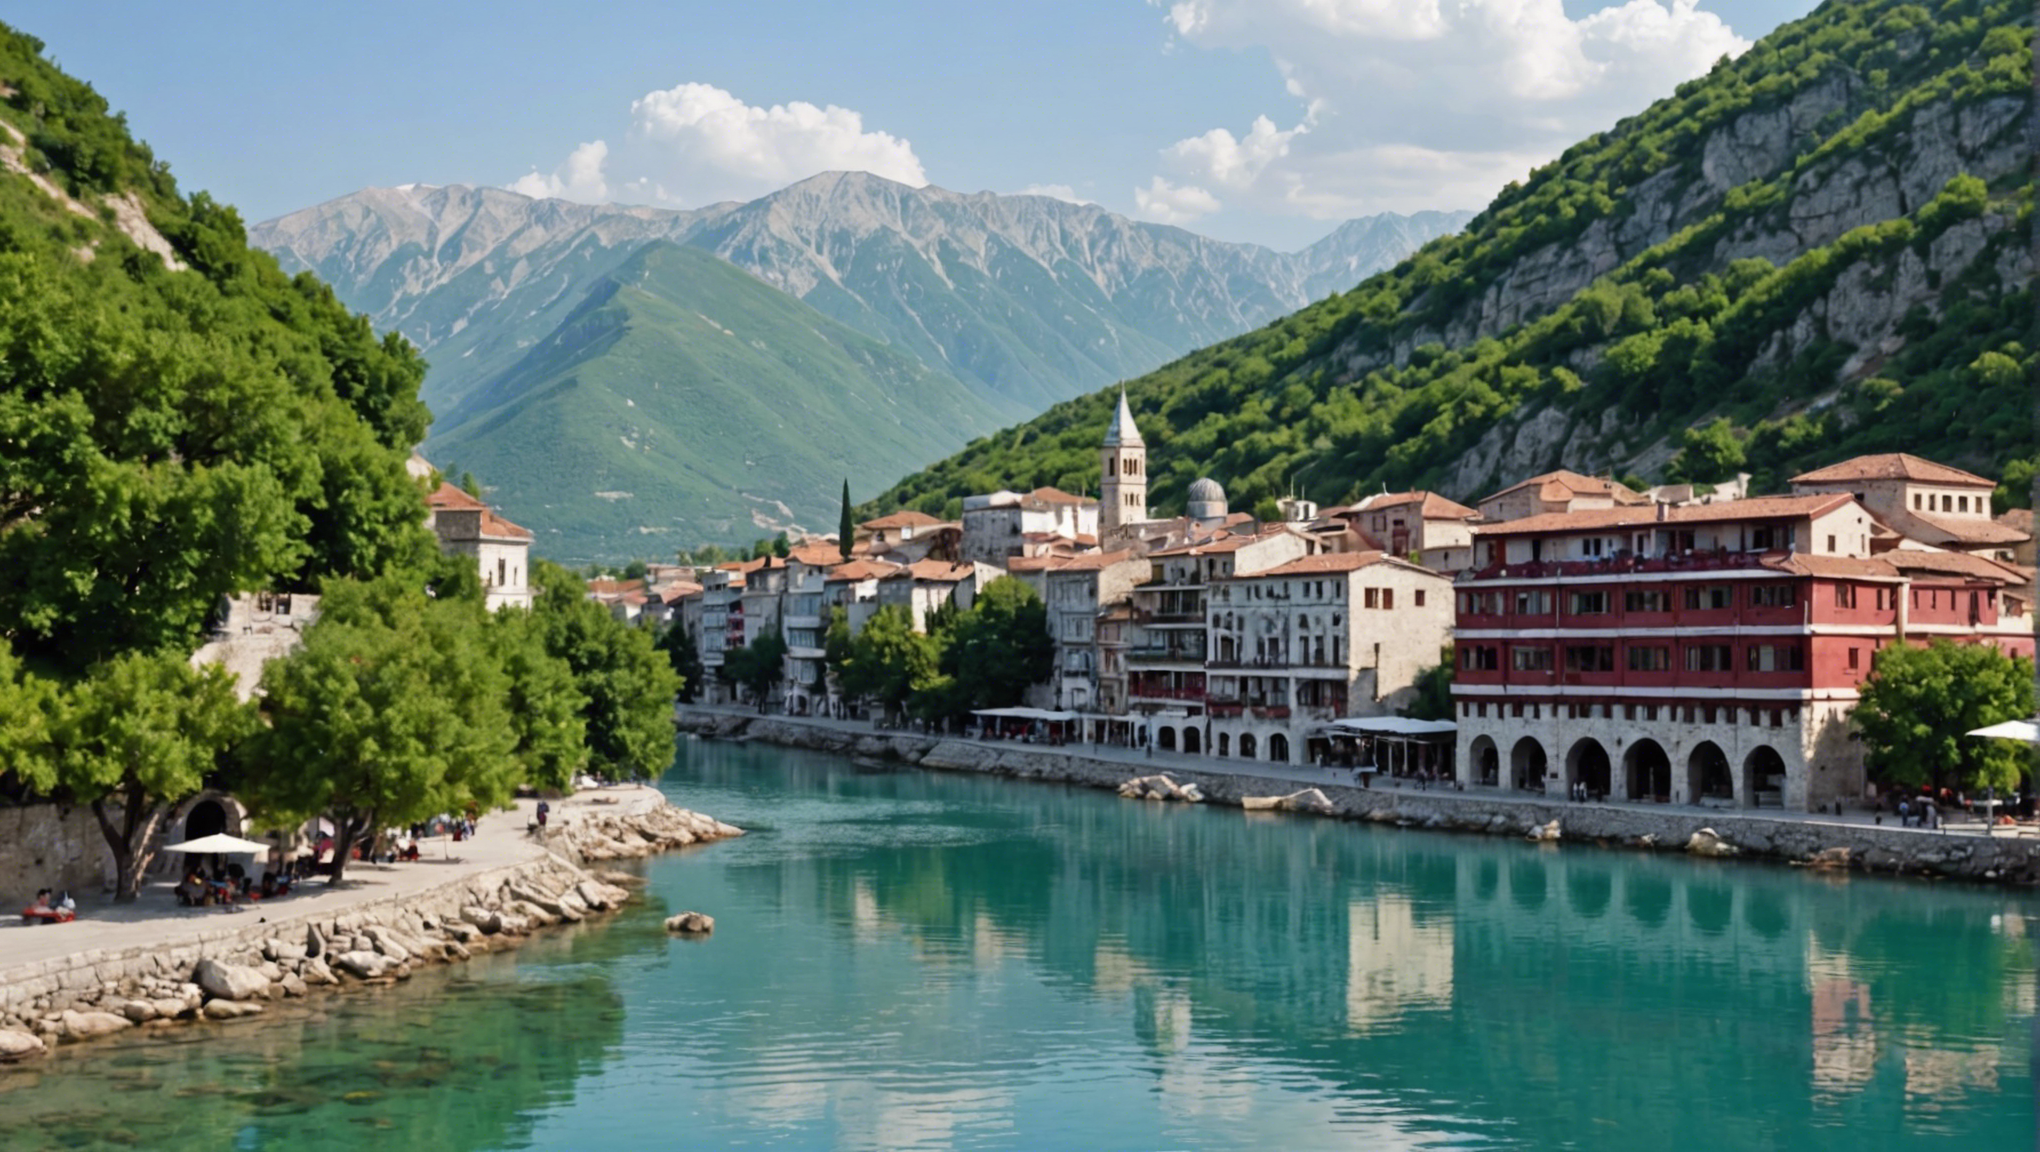 découvrez les incontournables de l'albanie et profitez des activités incontournables pour un voyage touristique réussi dans ce magnifique pays.